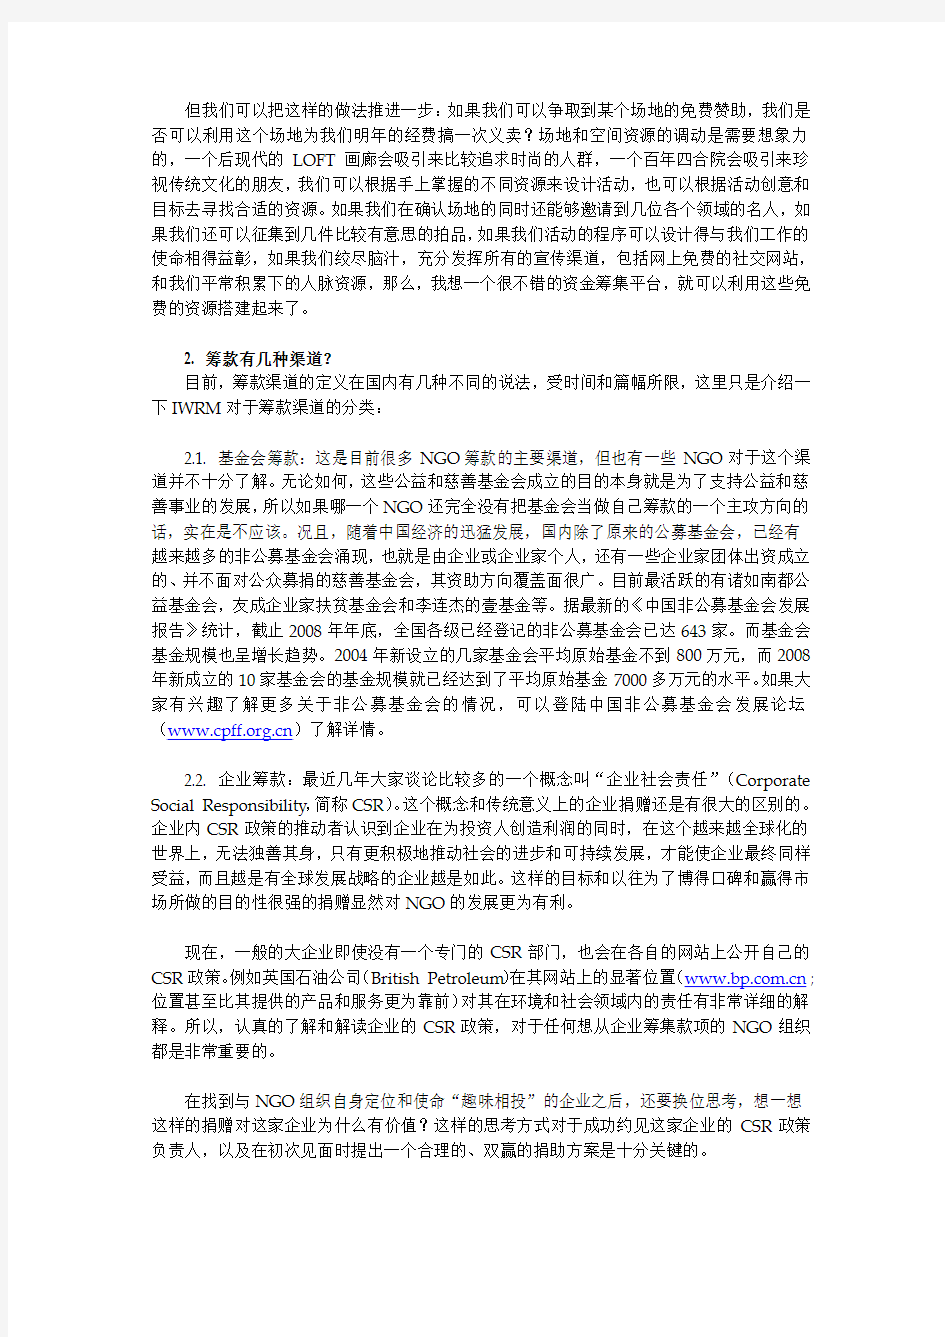 中国草根NGO筹款的ABC 发展简报筹款文章 20091120